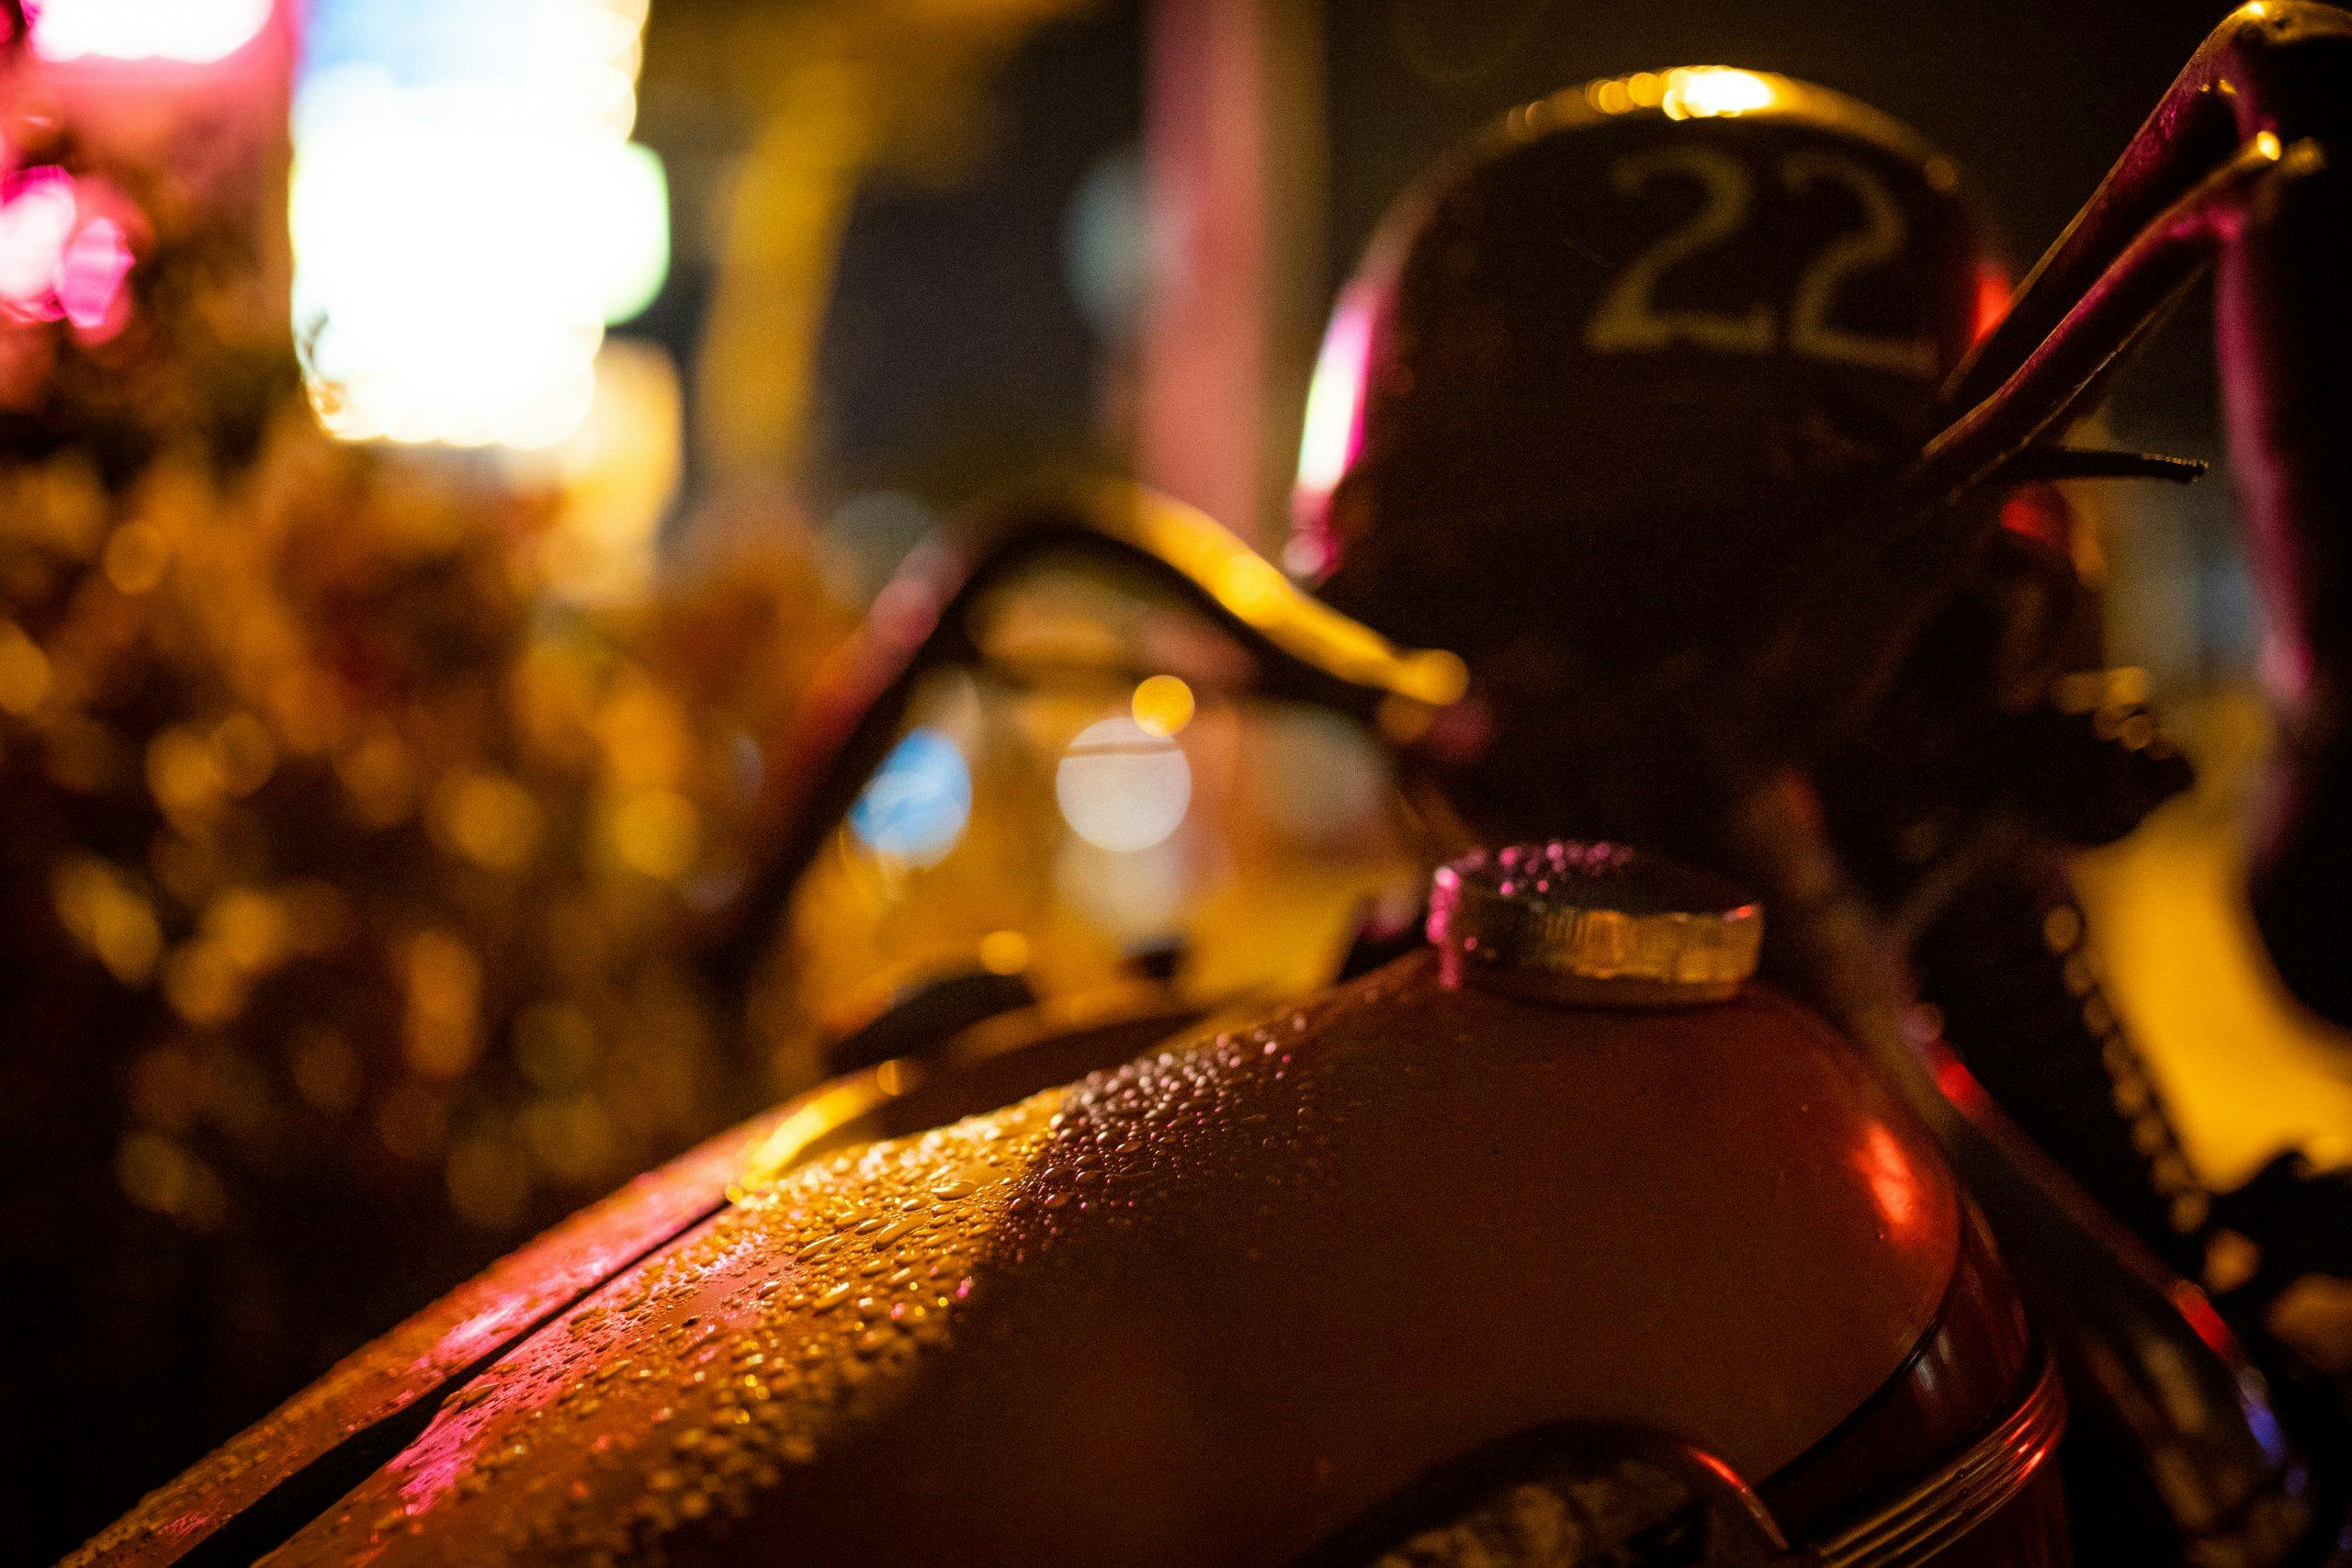 motorbike at night tank perspiration